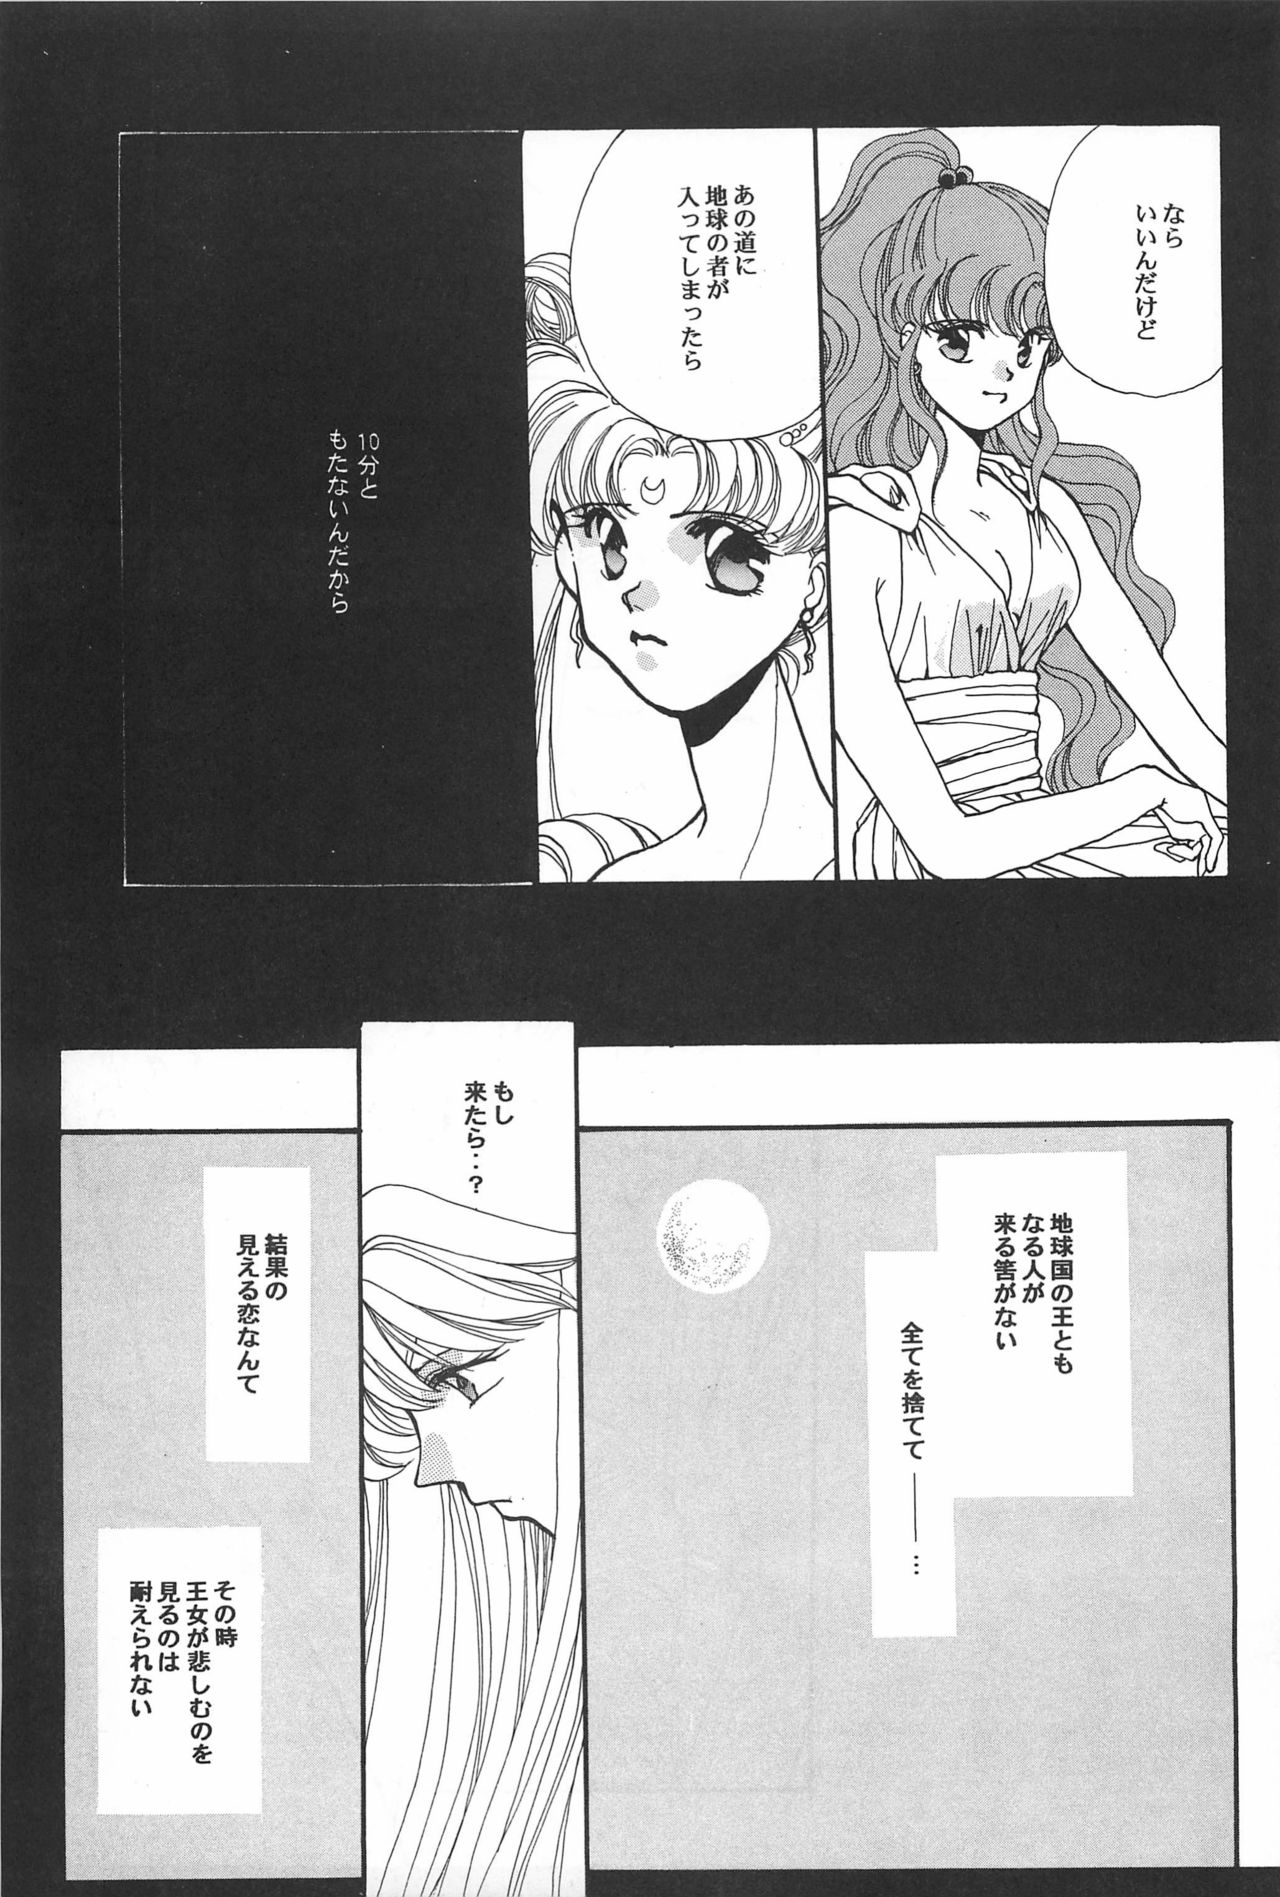 [Hello World (Muttri Moony)] Kaze no You ni Yume no You ni - Sailor Moon Collection (Sailor Moon) 66